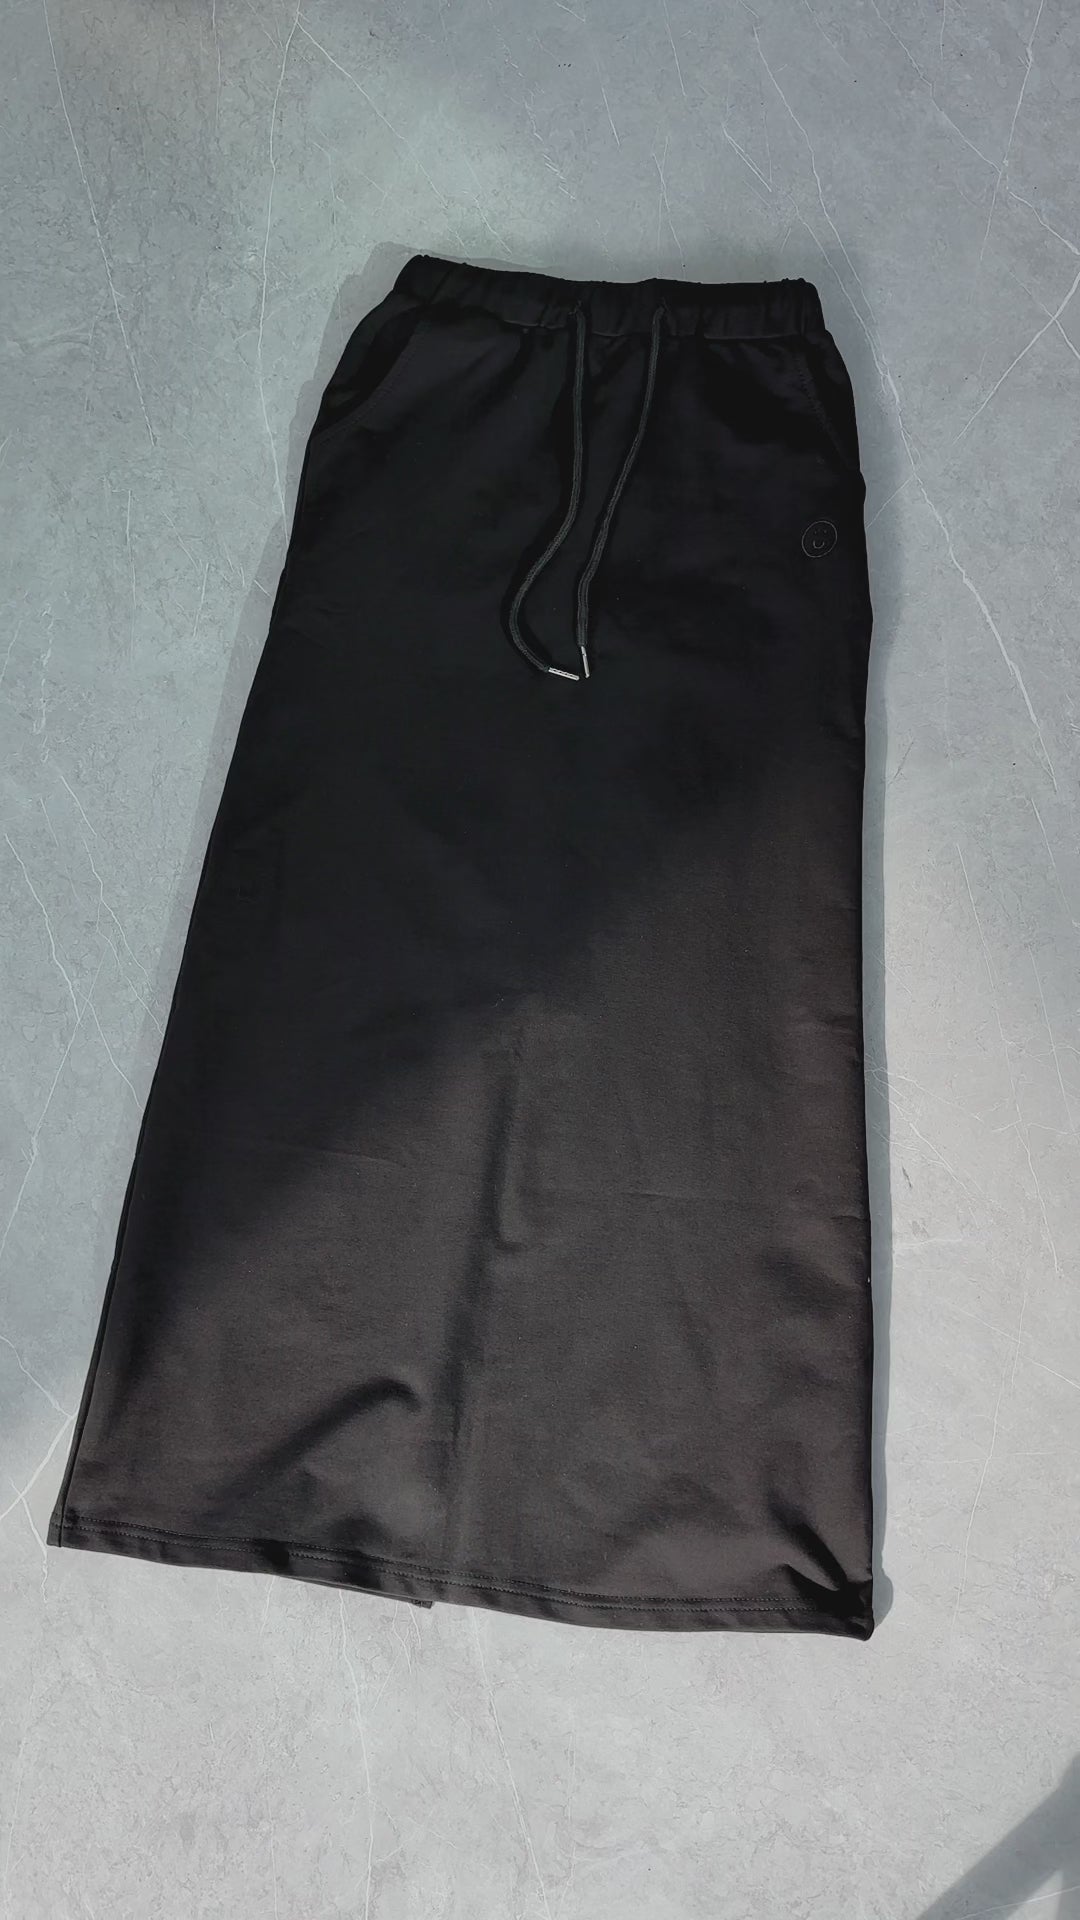 Signature Maxi Skirt in Black - Women